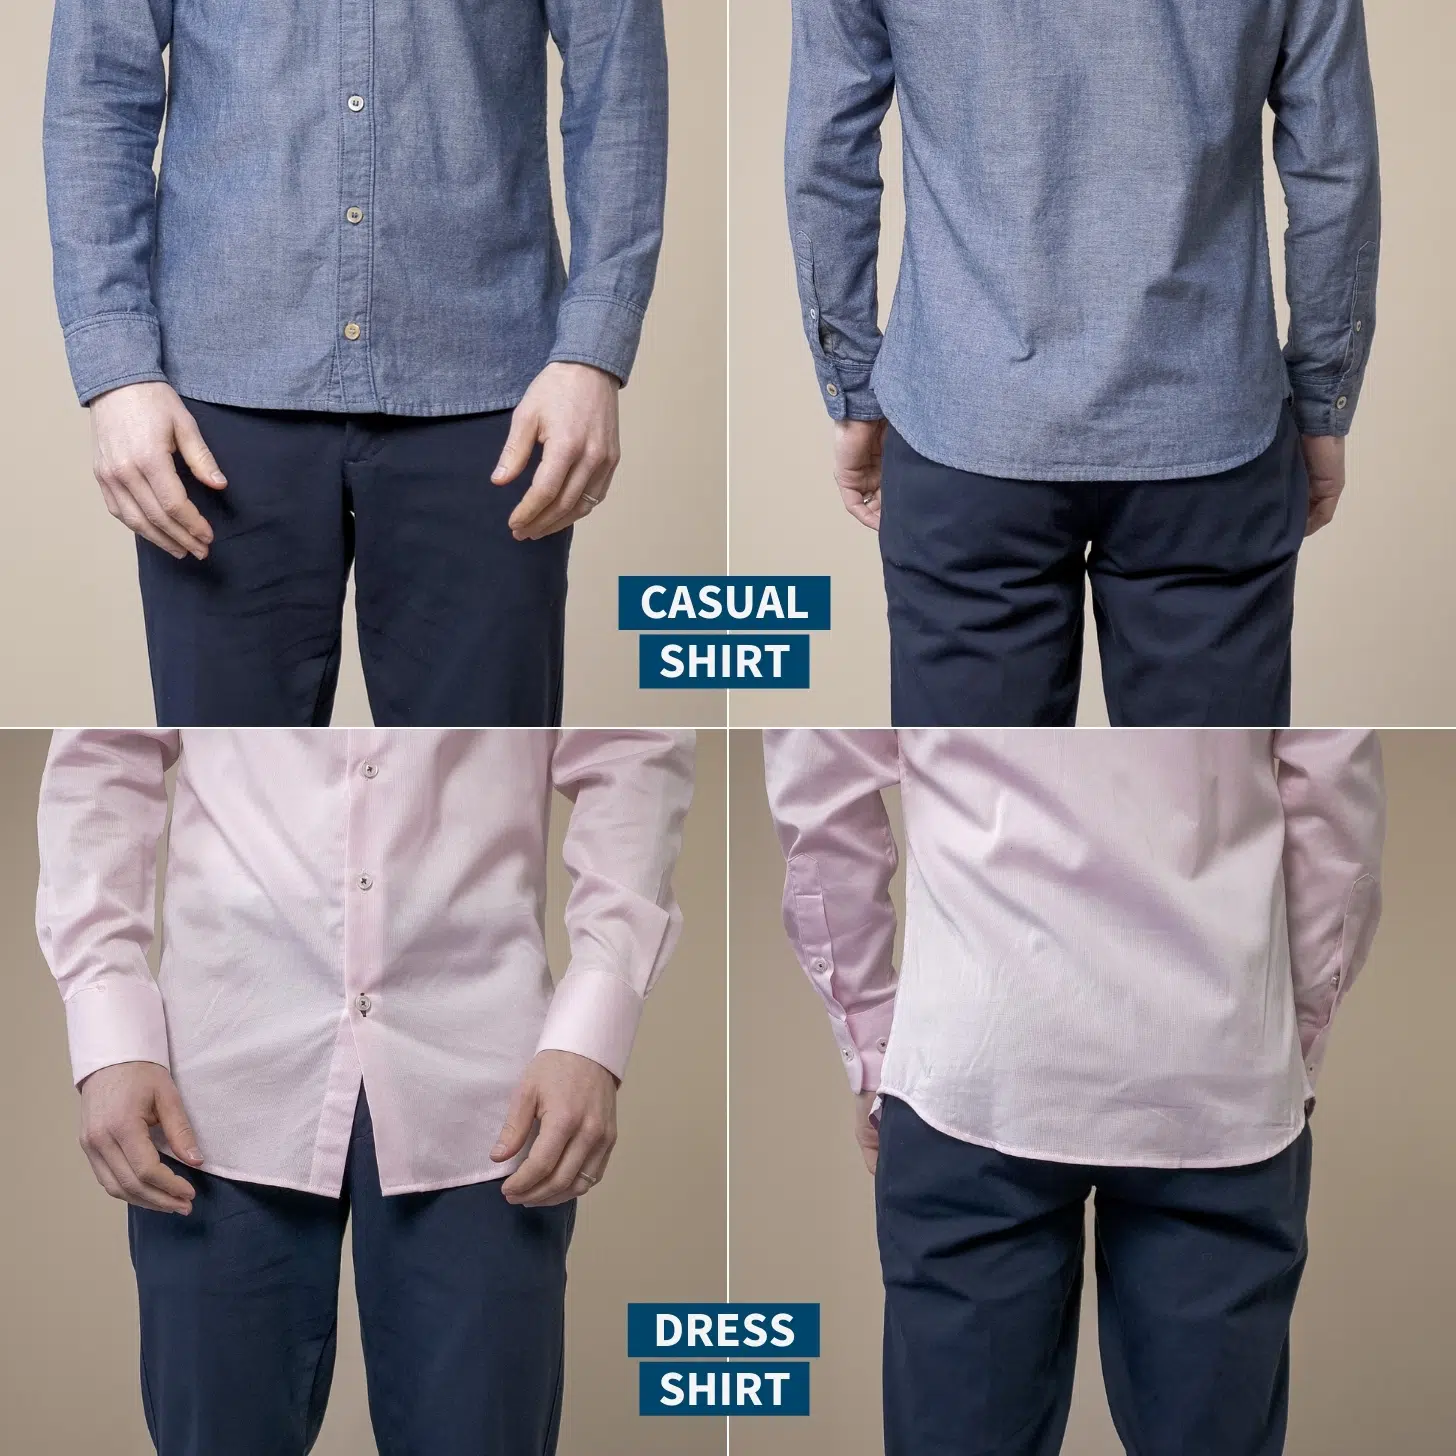 Casual vs dress shirt